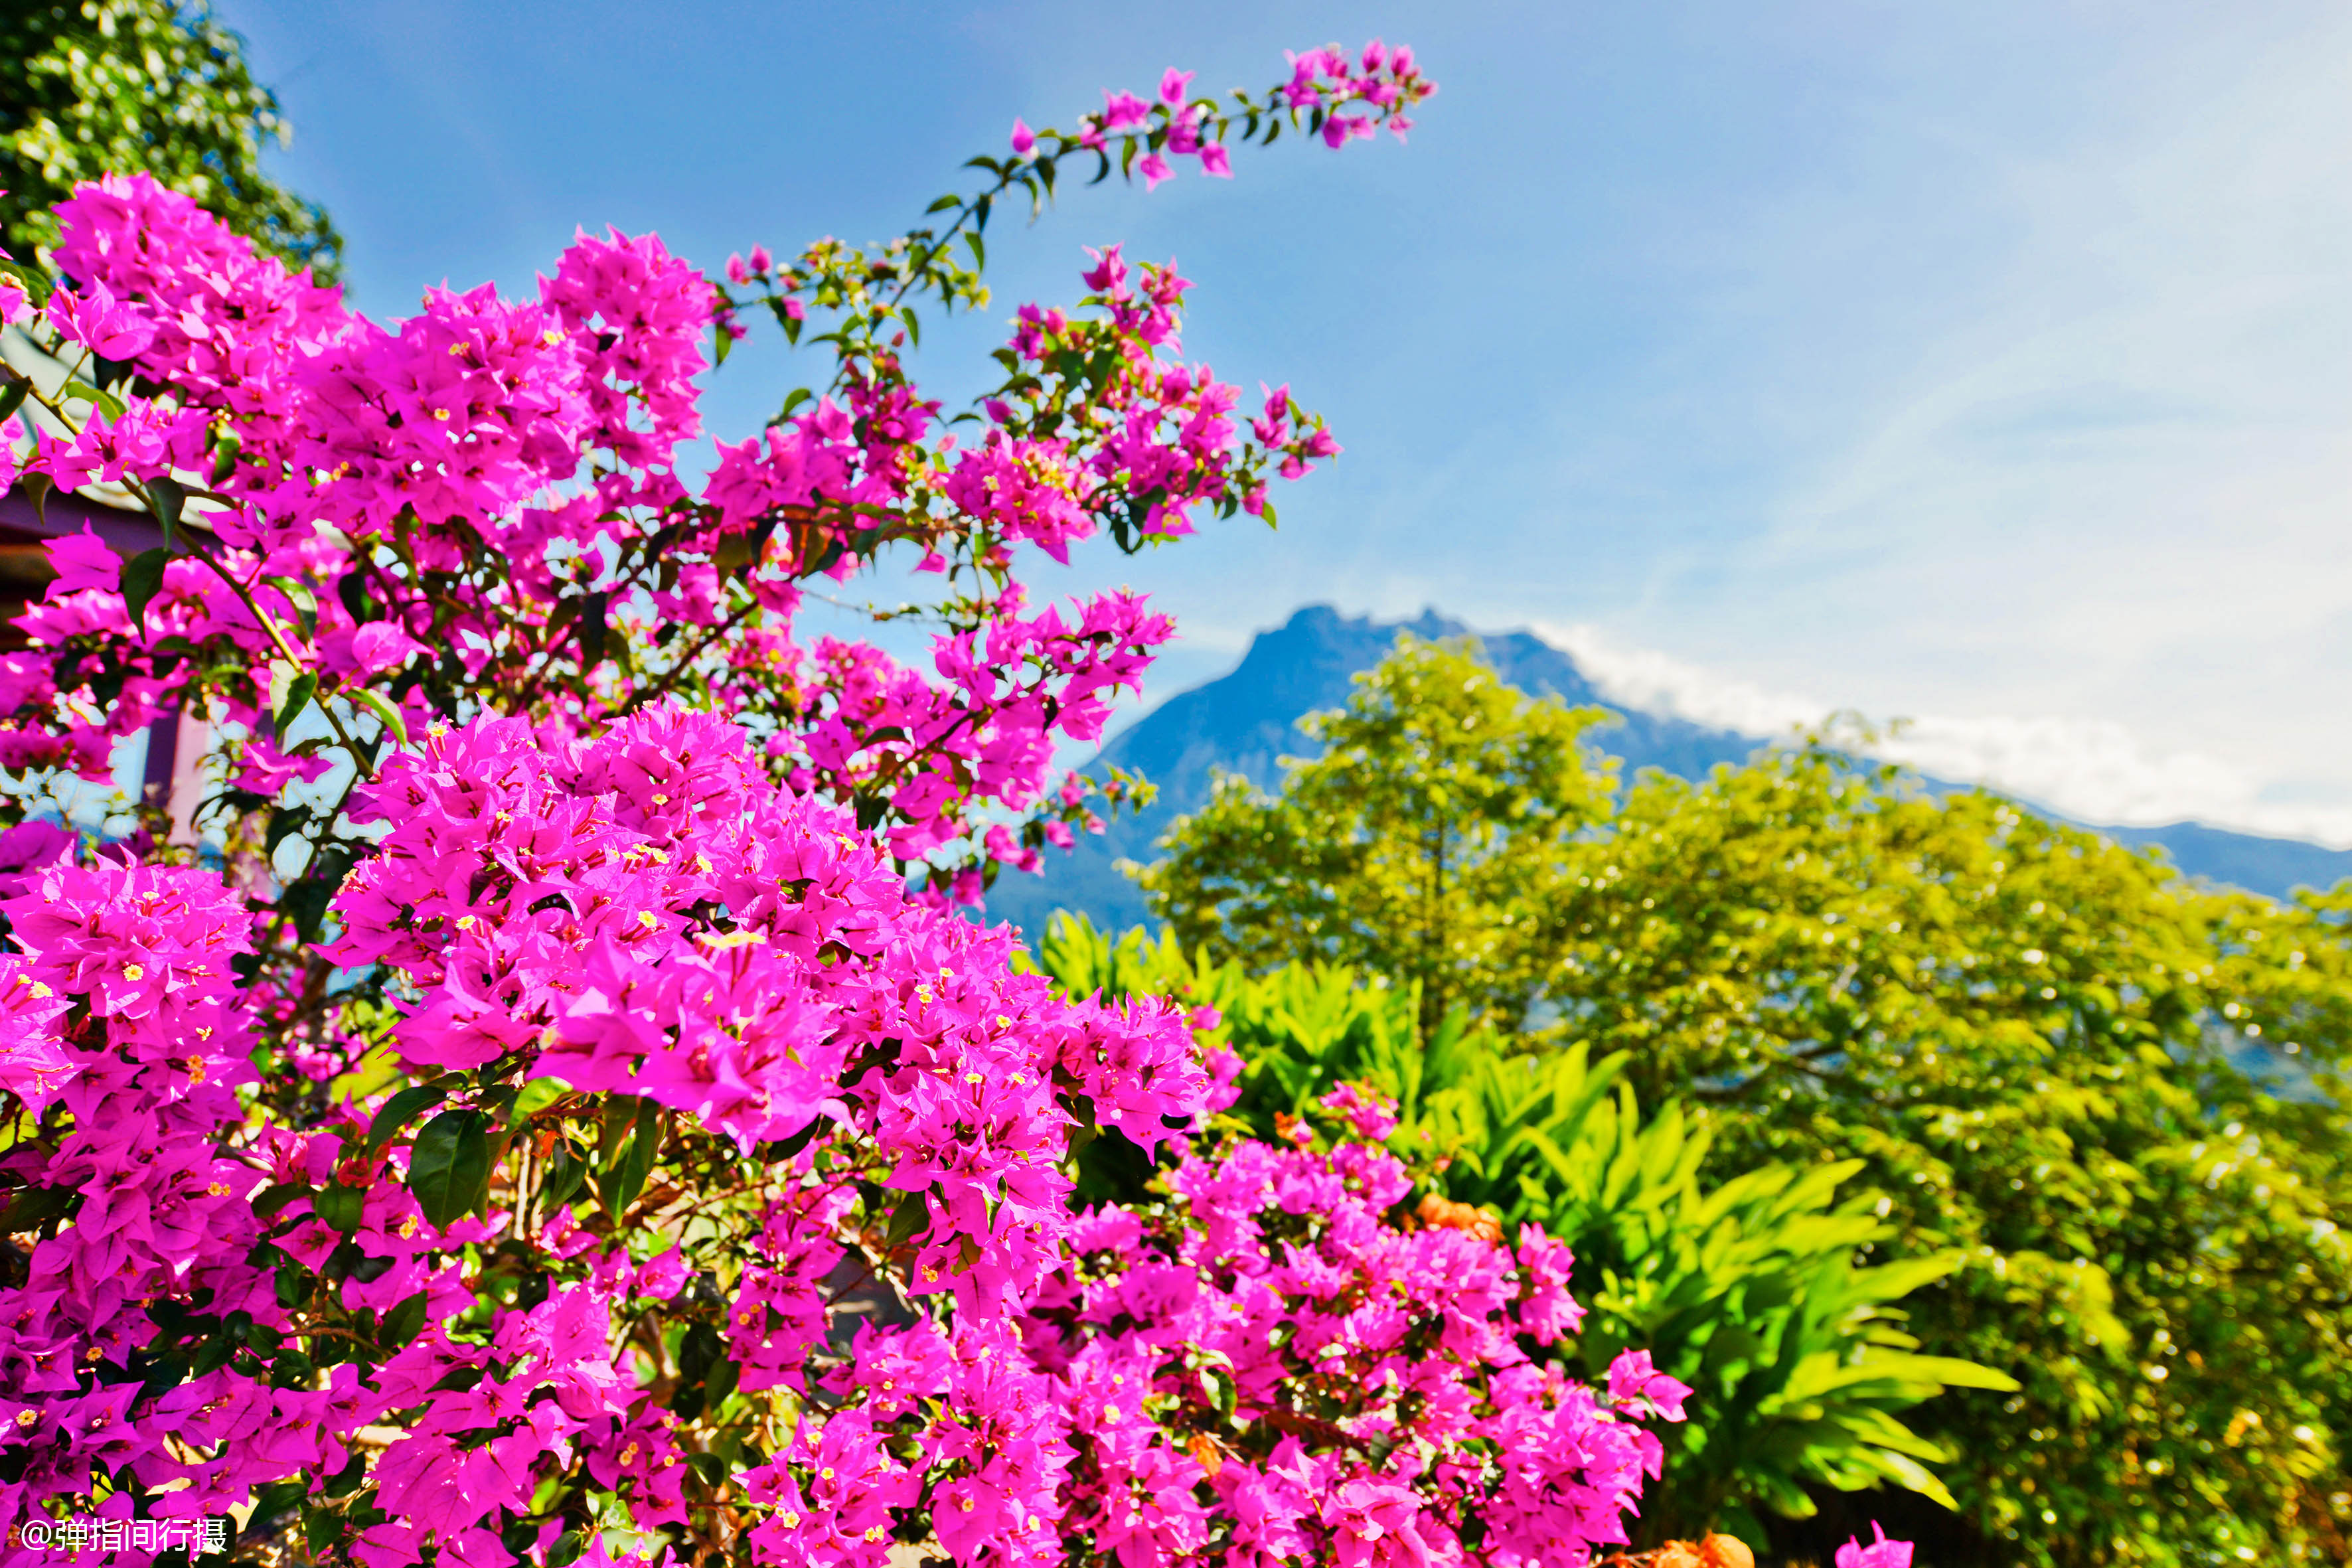 原创             世界上最大的花卉花瓣直径可达1.4米生长东南亚最高山峰上